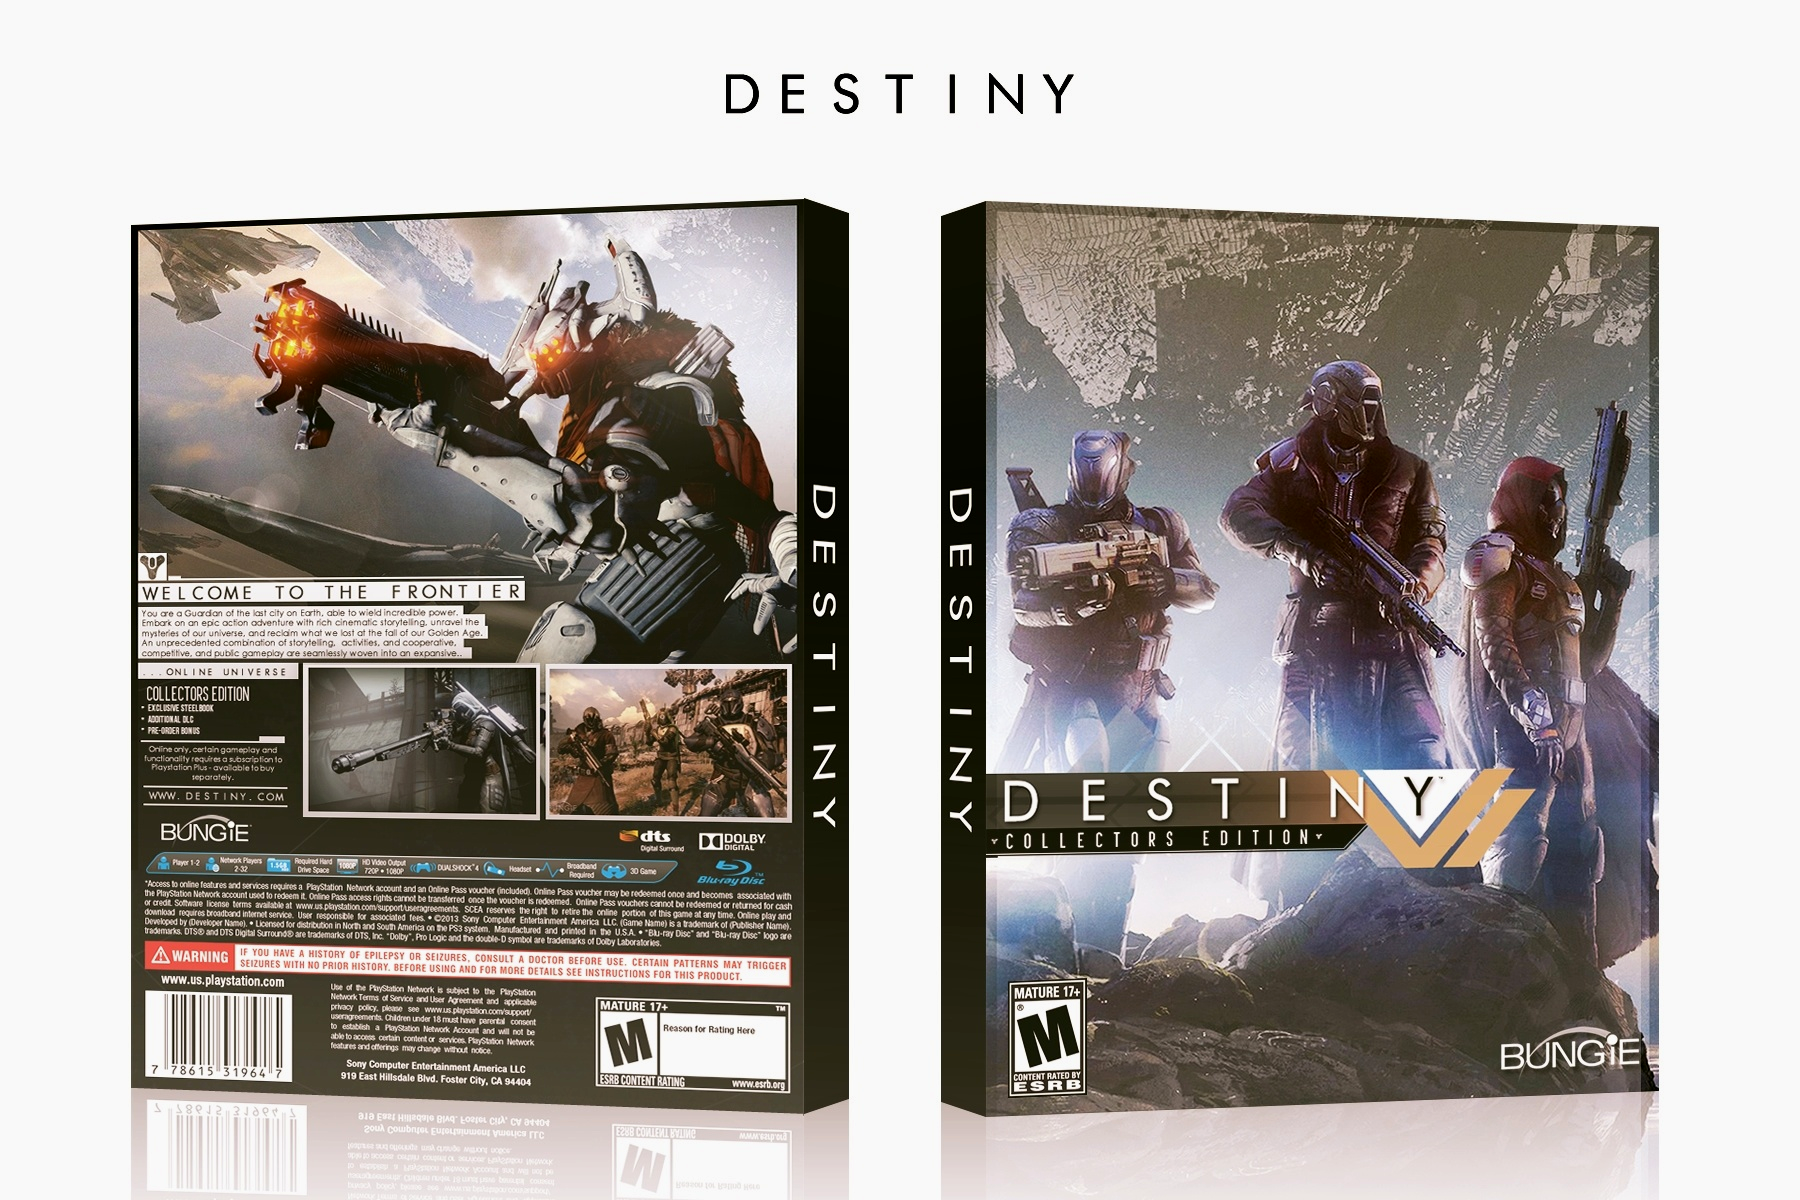 Destiny: Collectors edition box cover